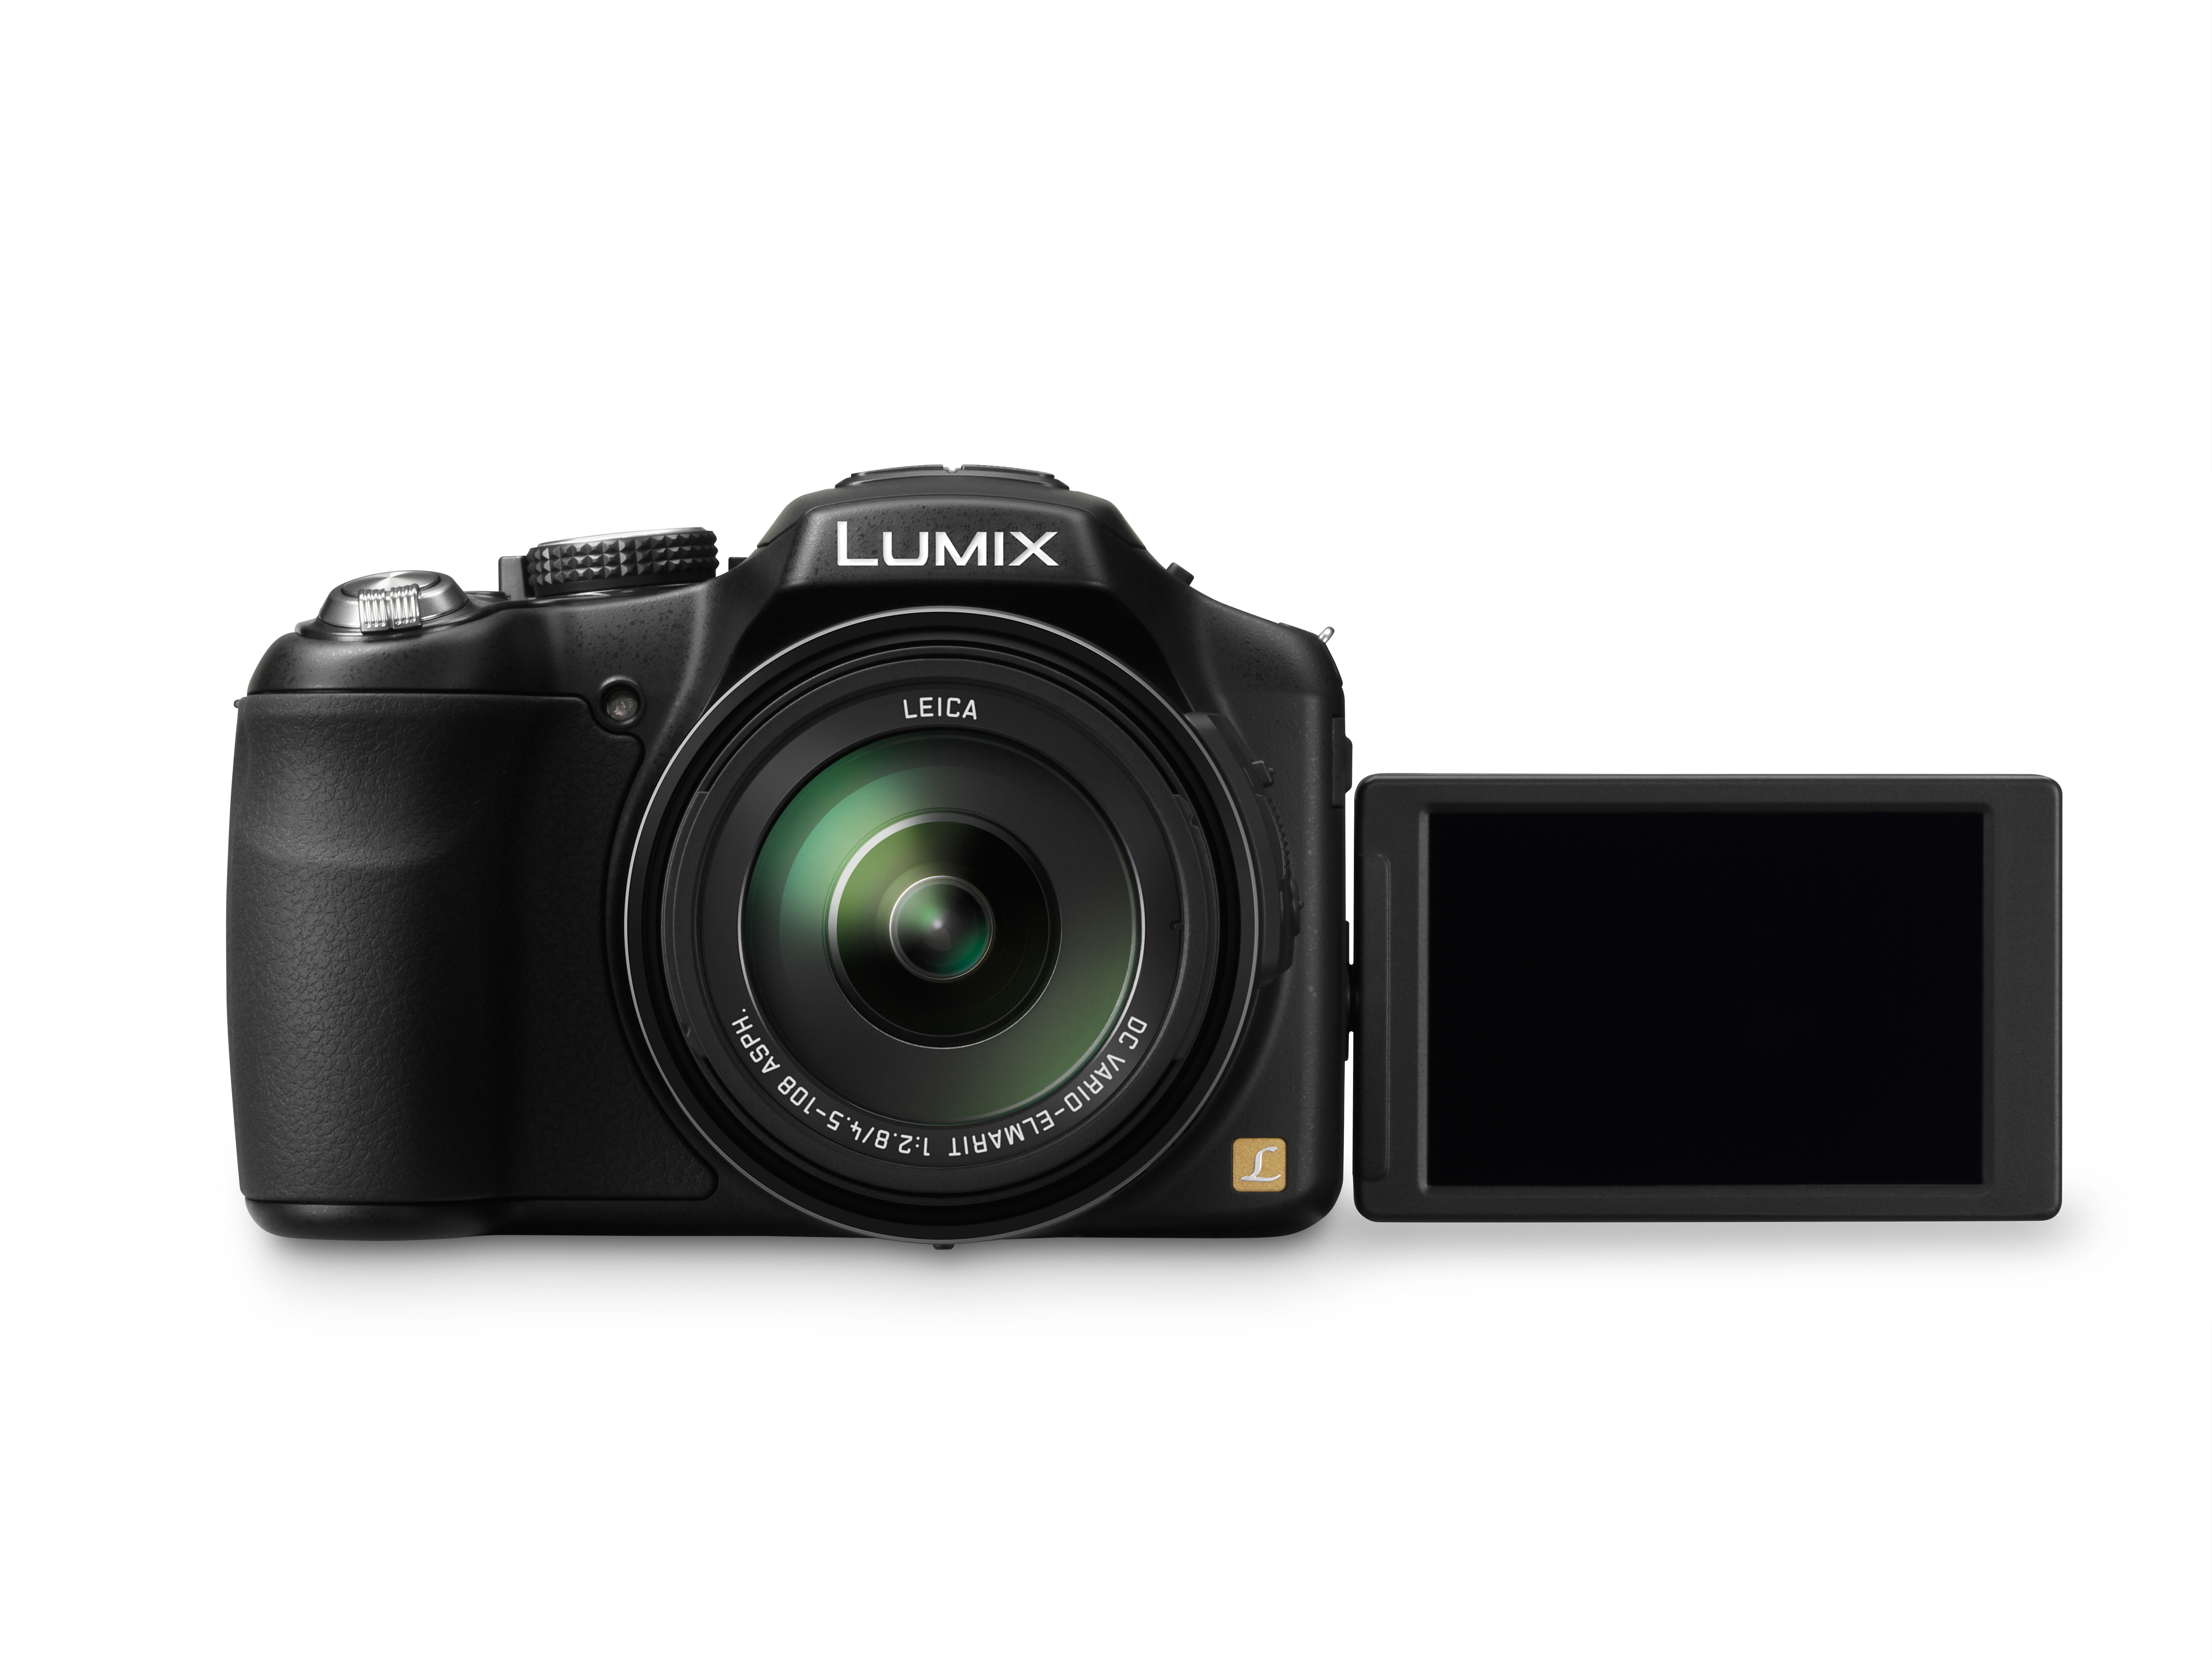 Panasonic Lumix DMC-FZ200 12.1 Digital Camera with CMOS Sensor and 24x Optical Zoom - Black - Walmart.com